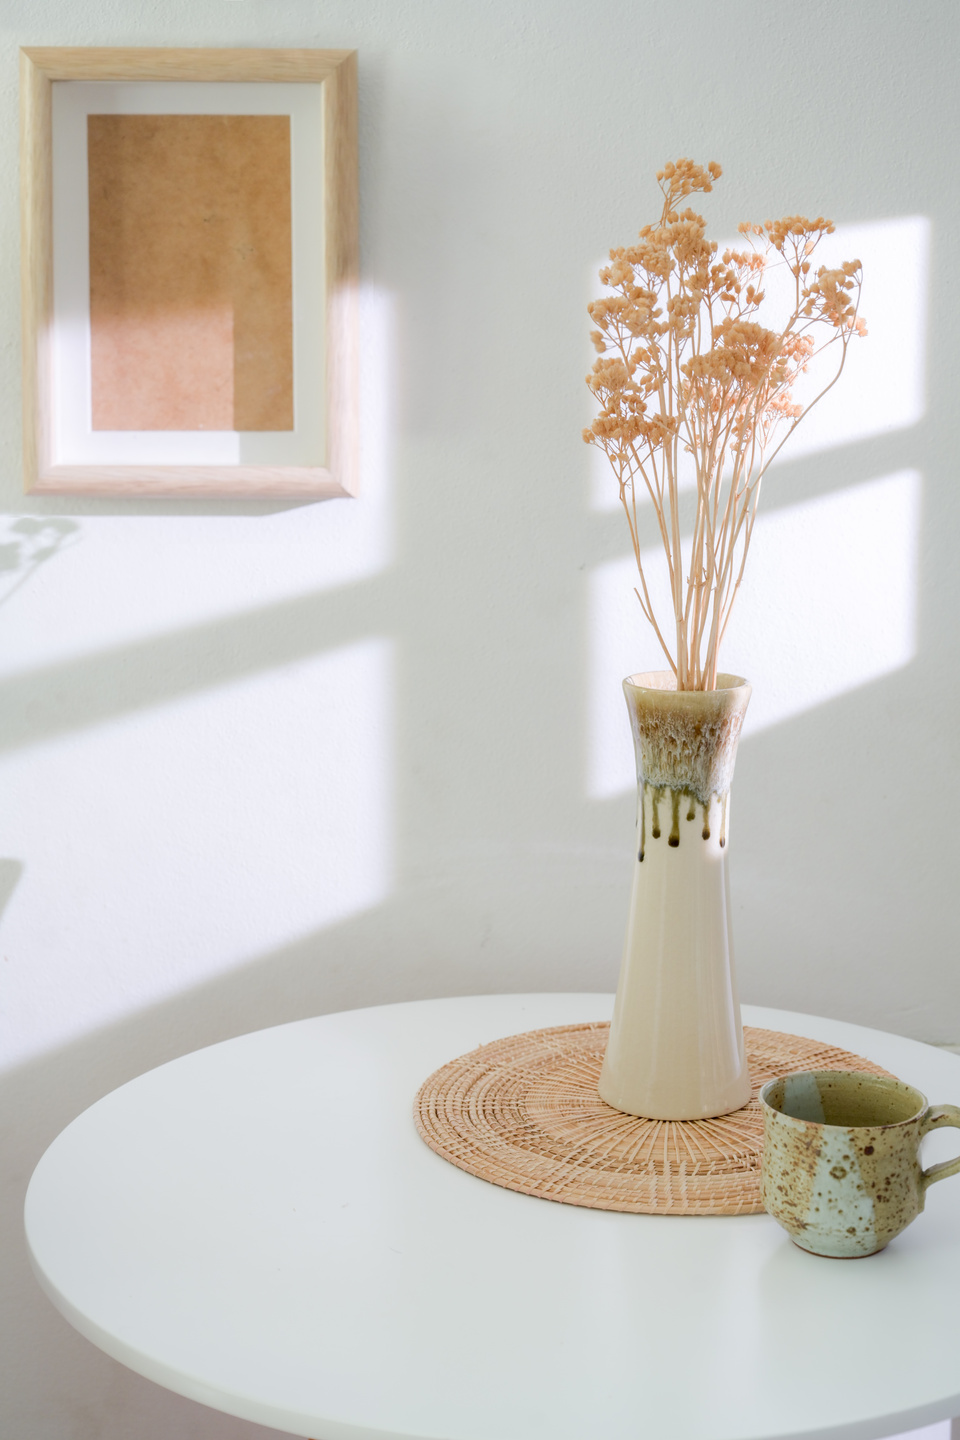 Home Interior Design of Living Room with Ceramic Vase, Coffee Cu